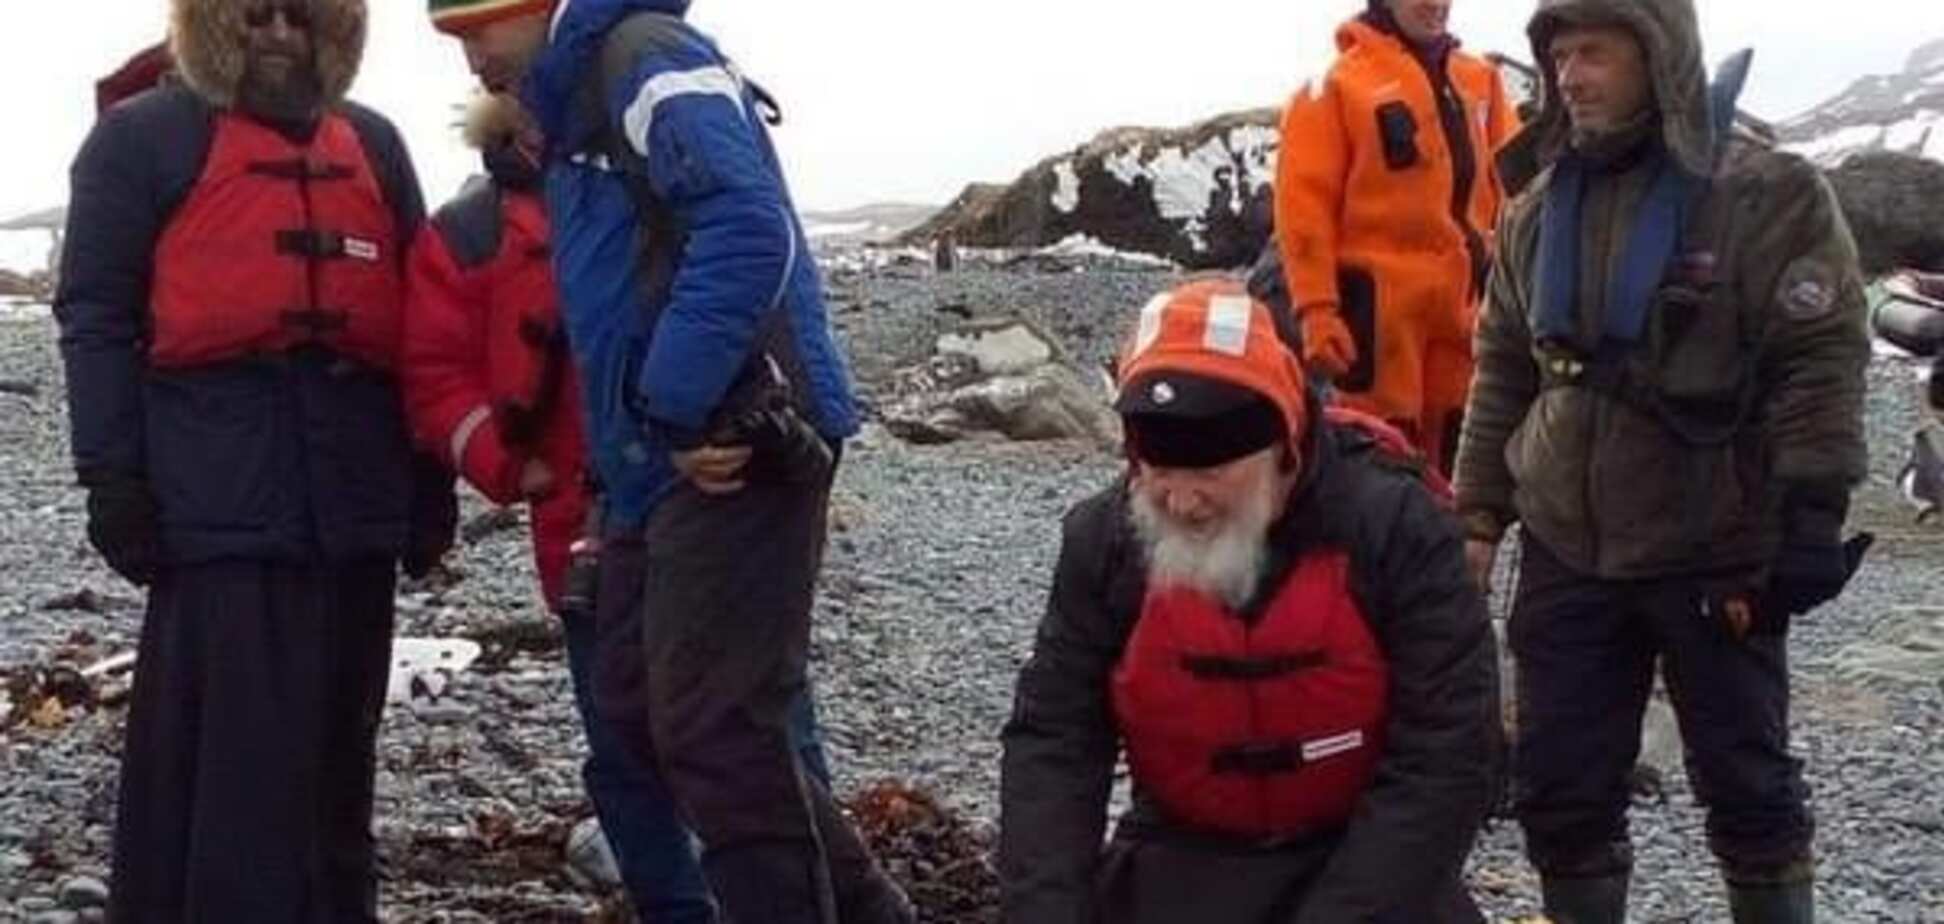 Гундяев и его пингвины: патриарх Кирилл в Антарктиде стал героем фотожаб